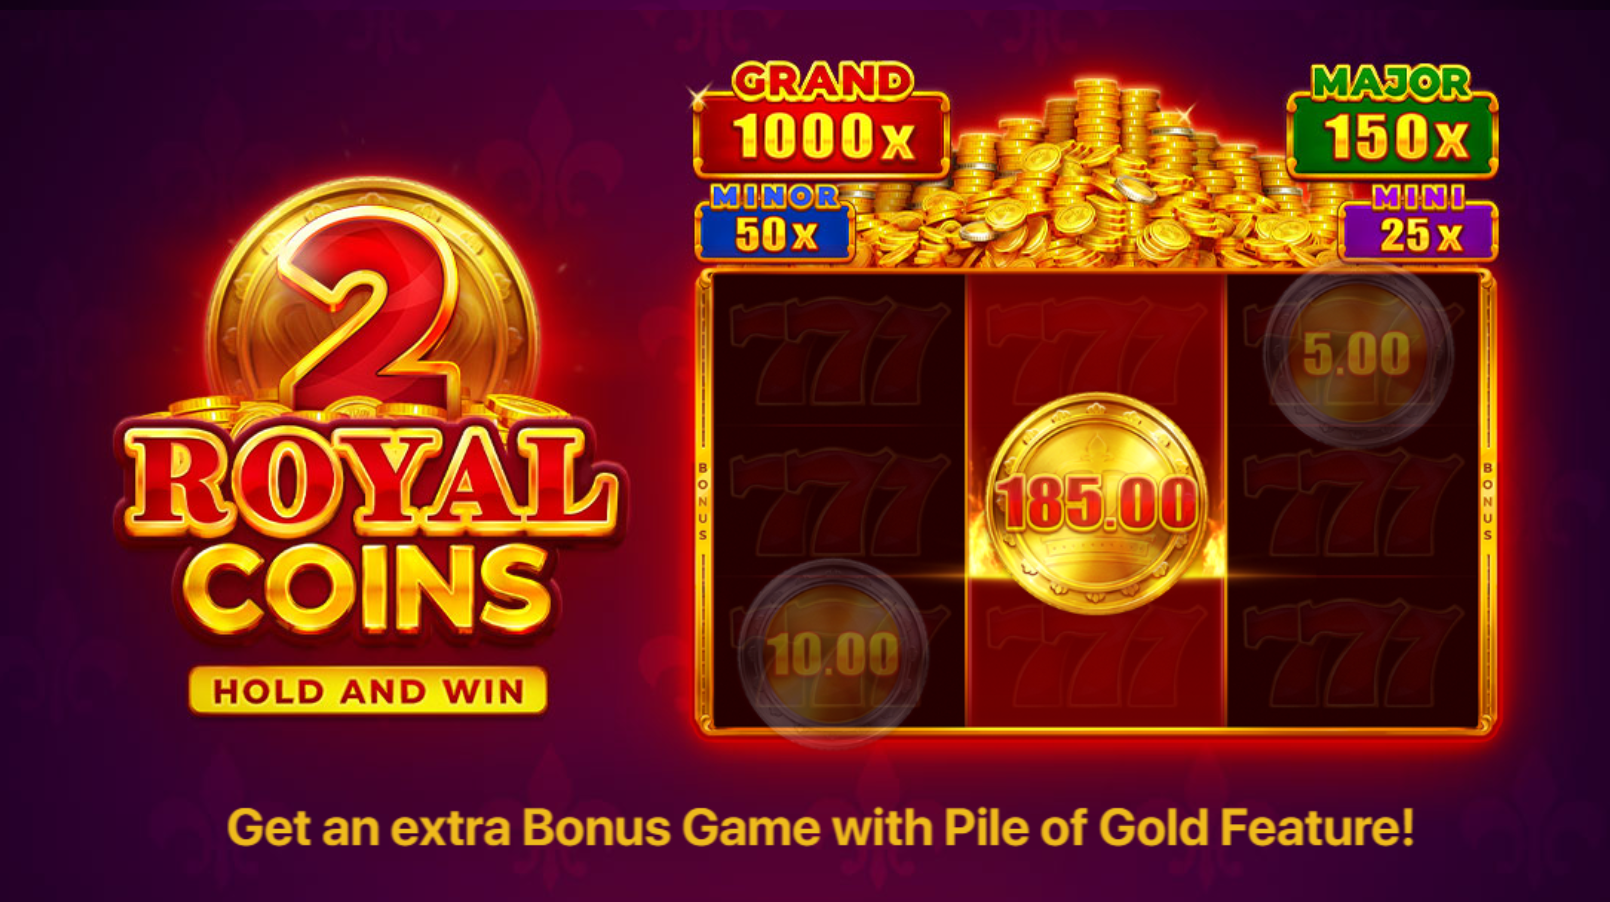 Royal coins 2 hold & win slot logo